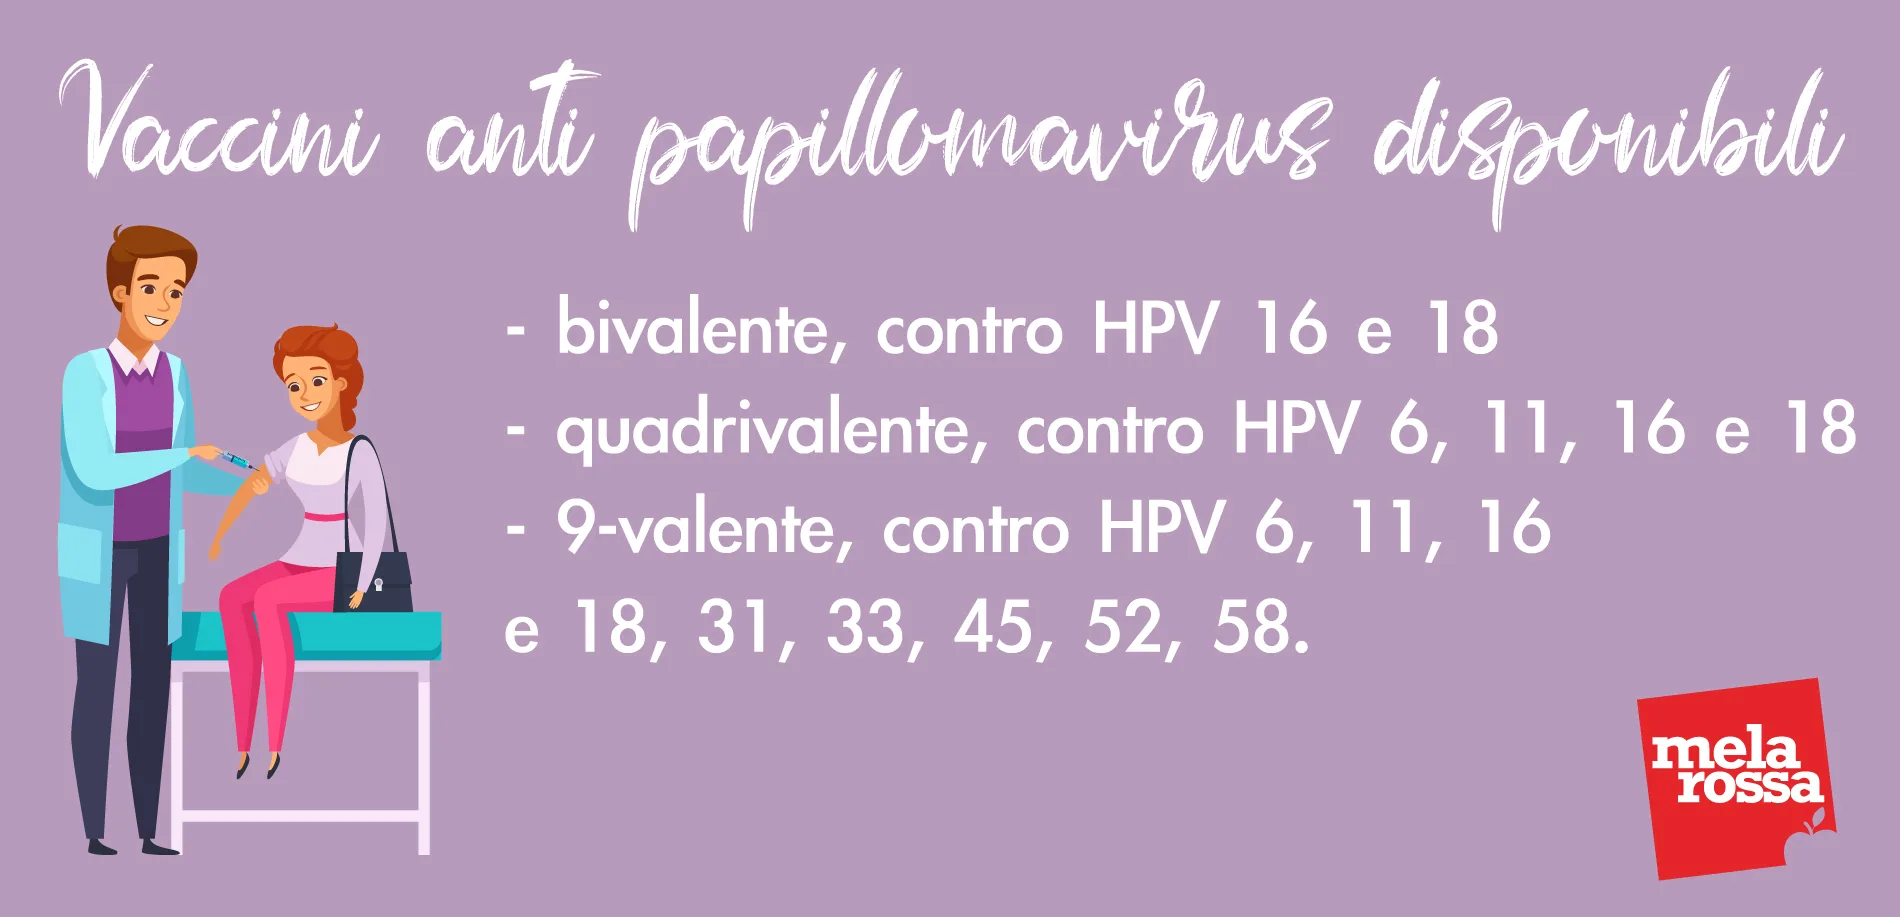 Papilloma virus e ricerca gravidanza.